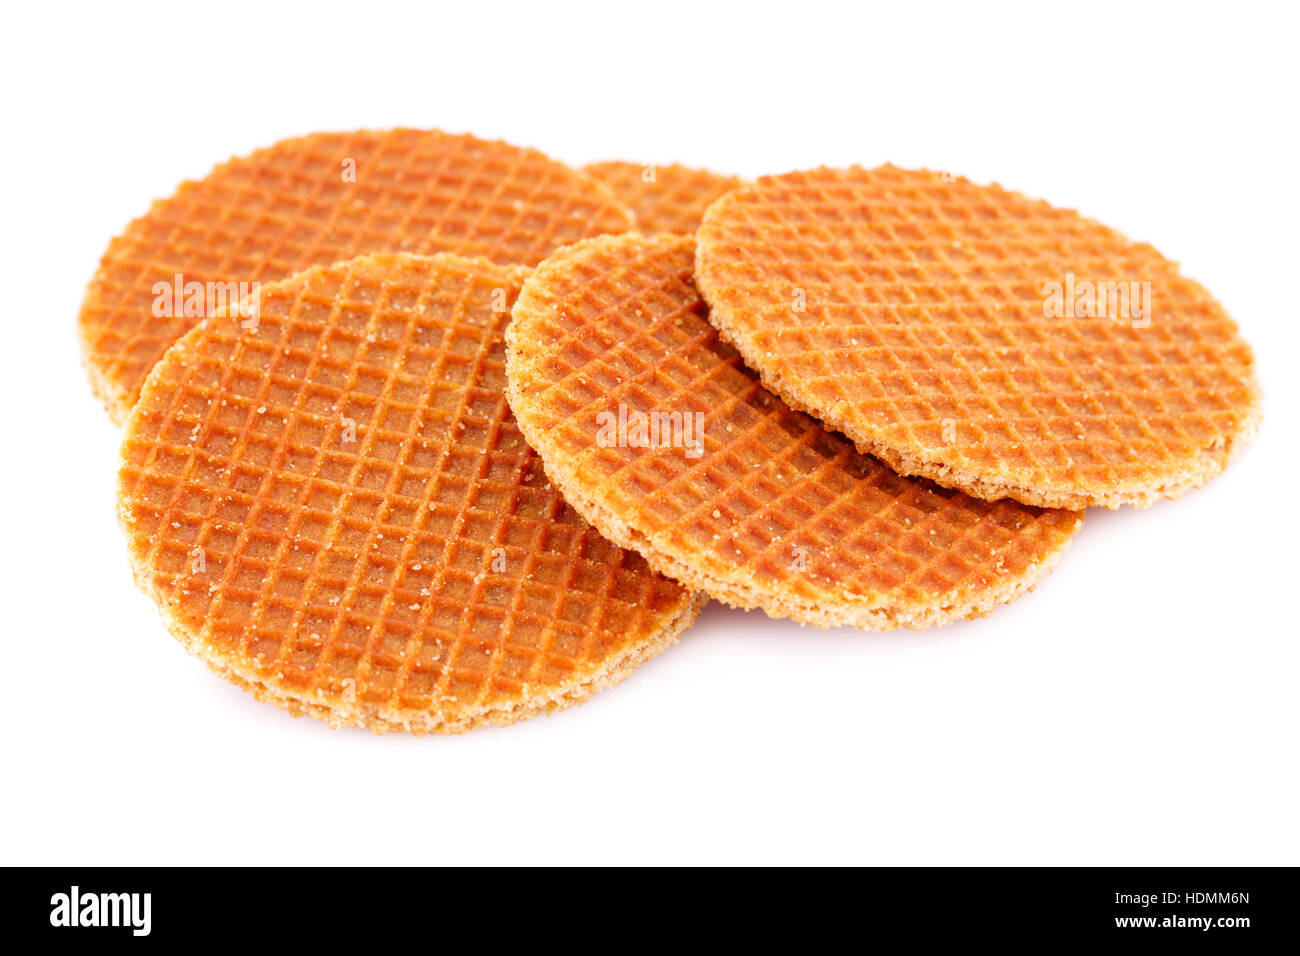 Round waffles isolated on white background. Stock Photo